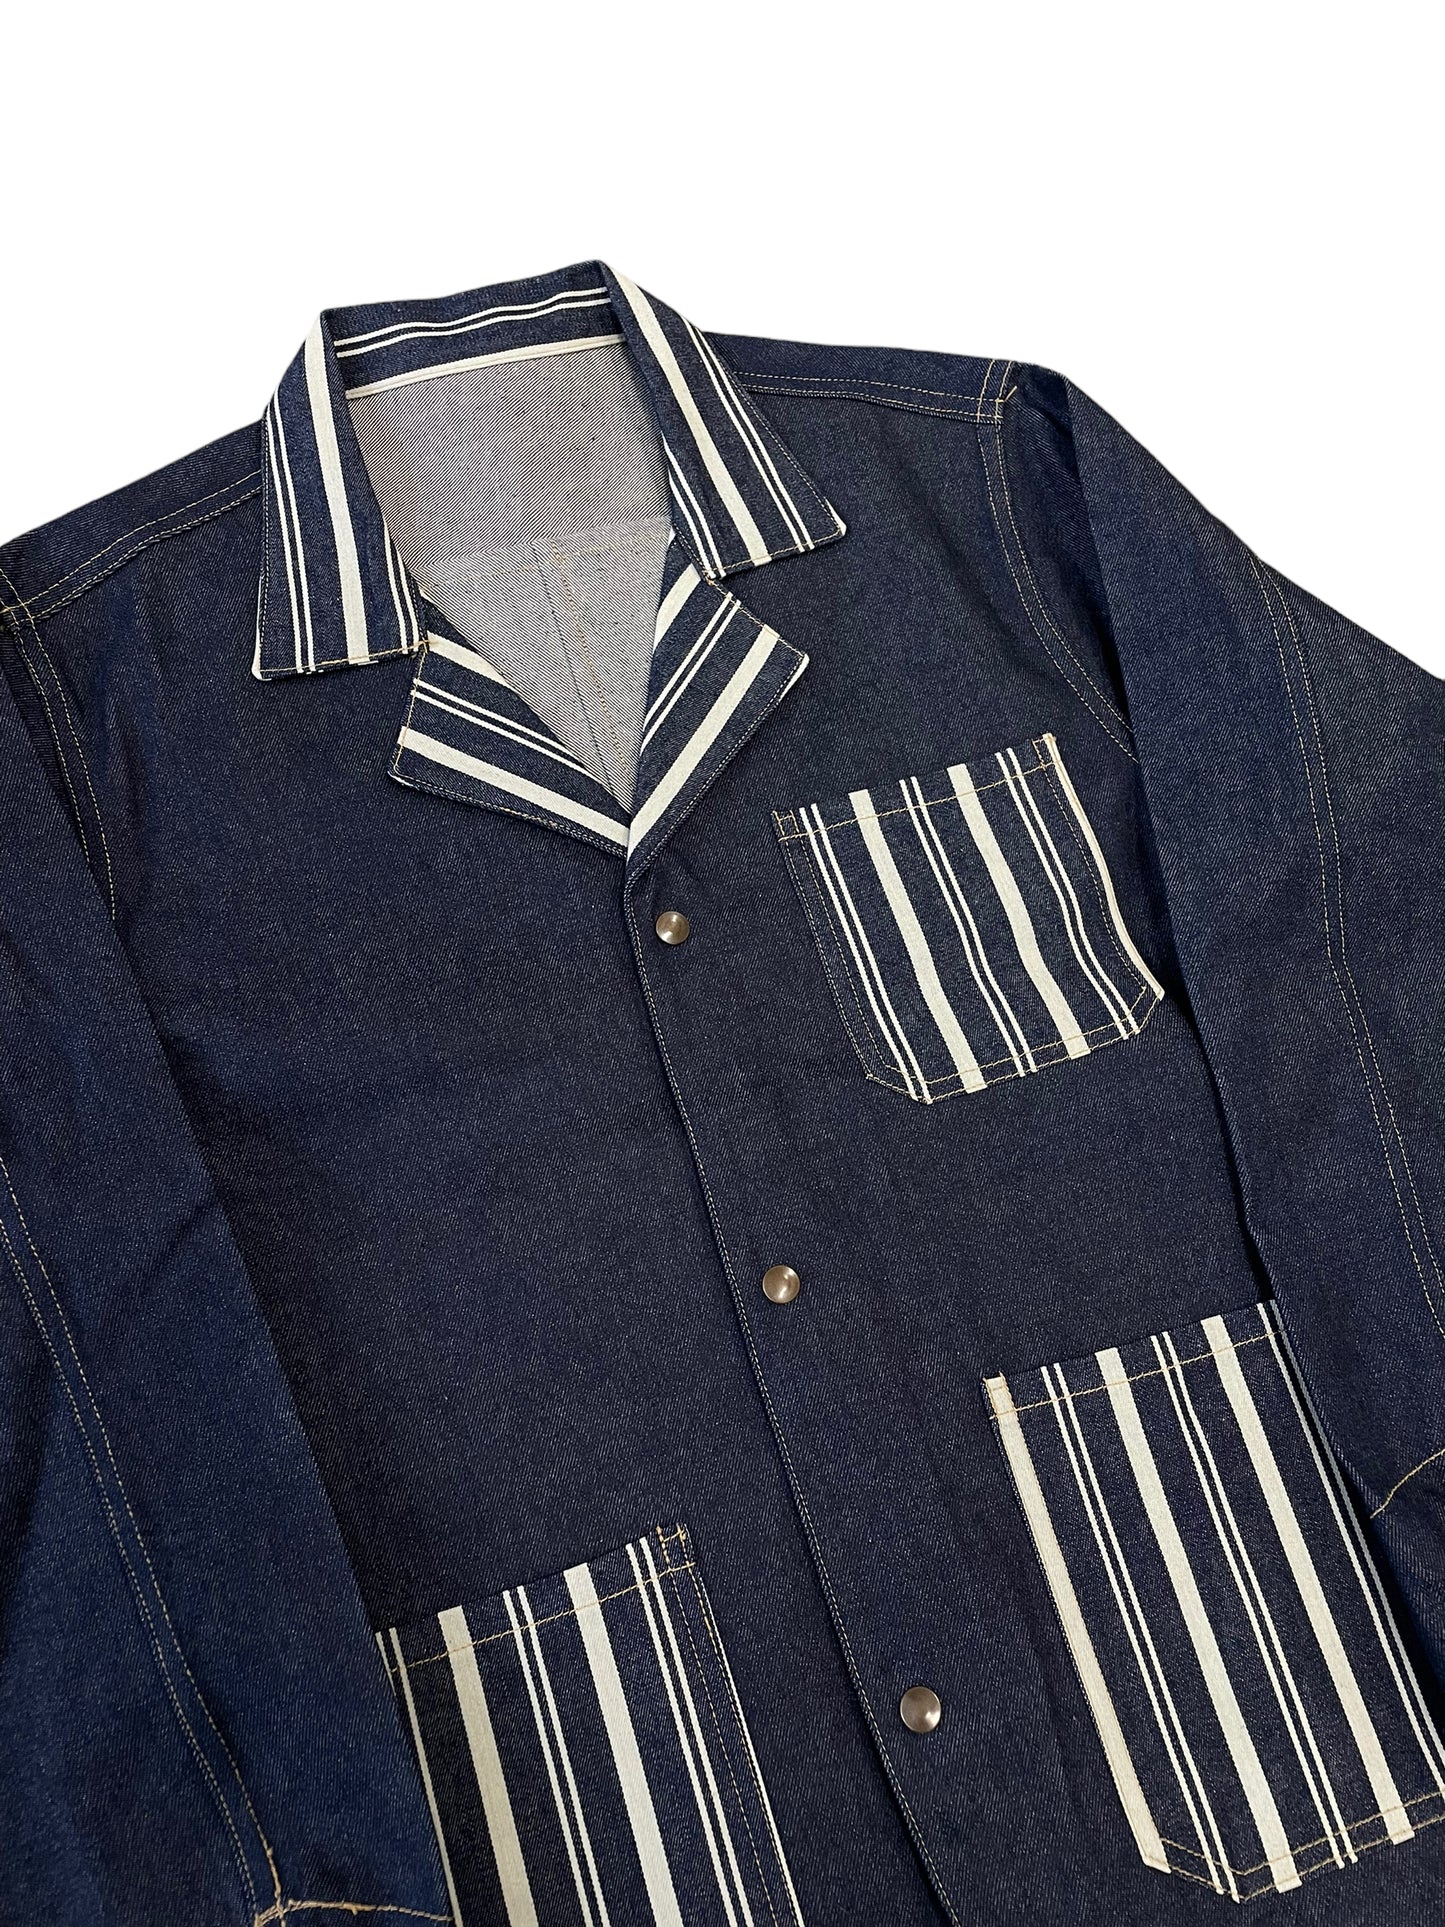 Vintage work jacket XL